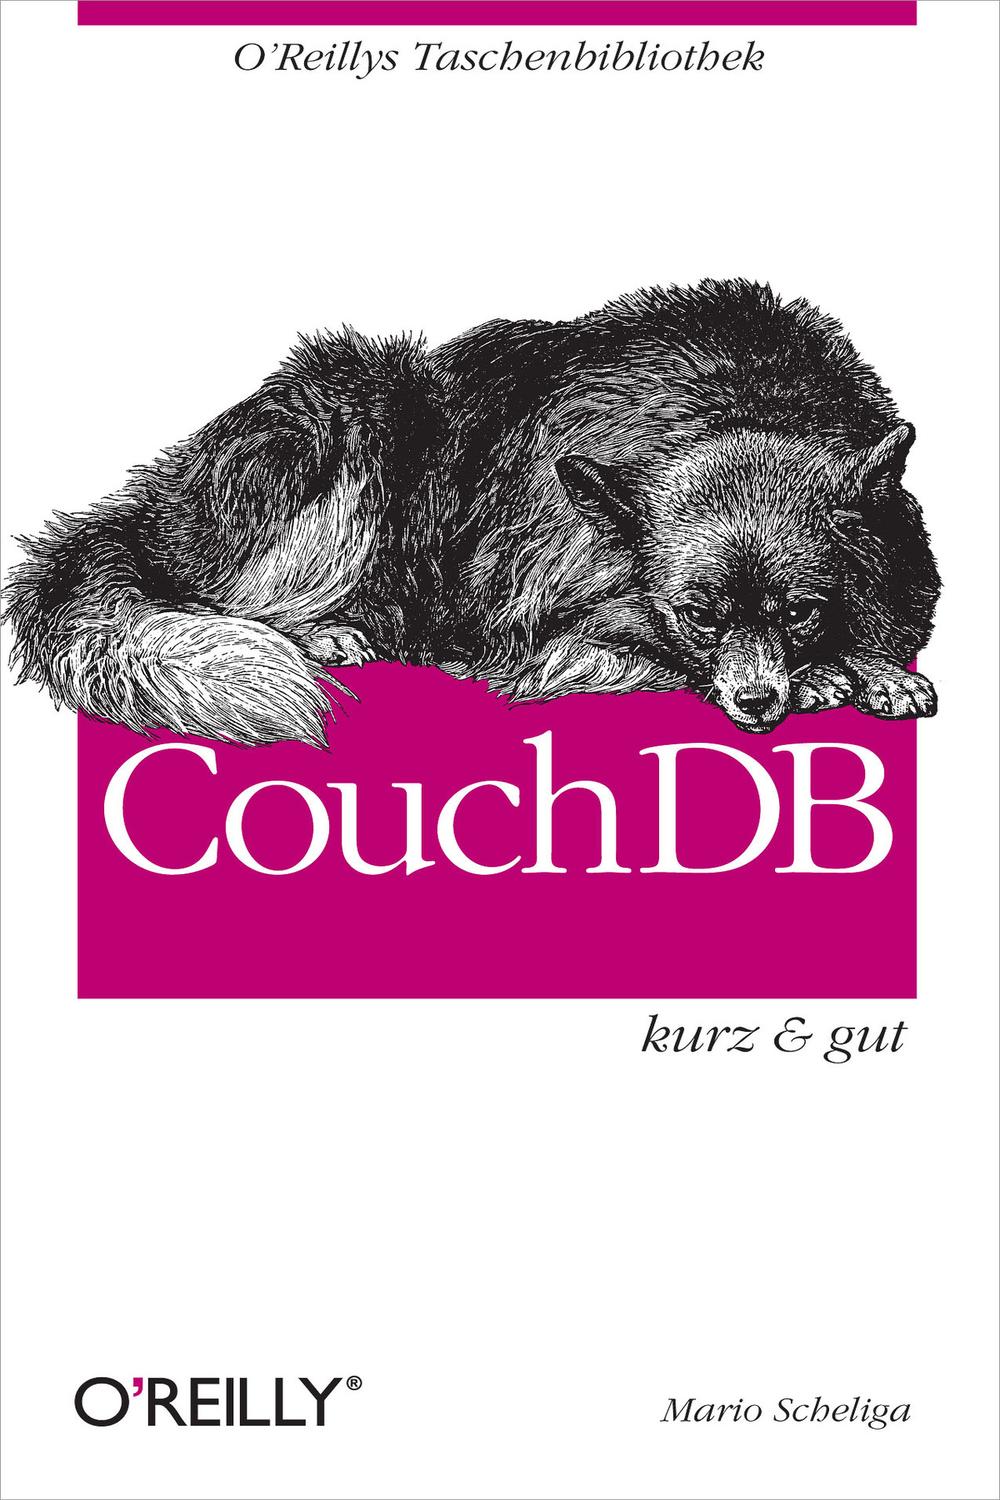 CouchDB kurz & gut - Mario Scheliga